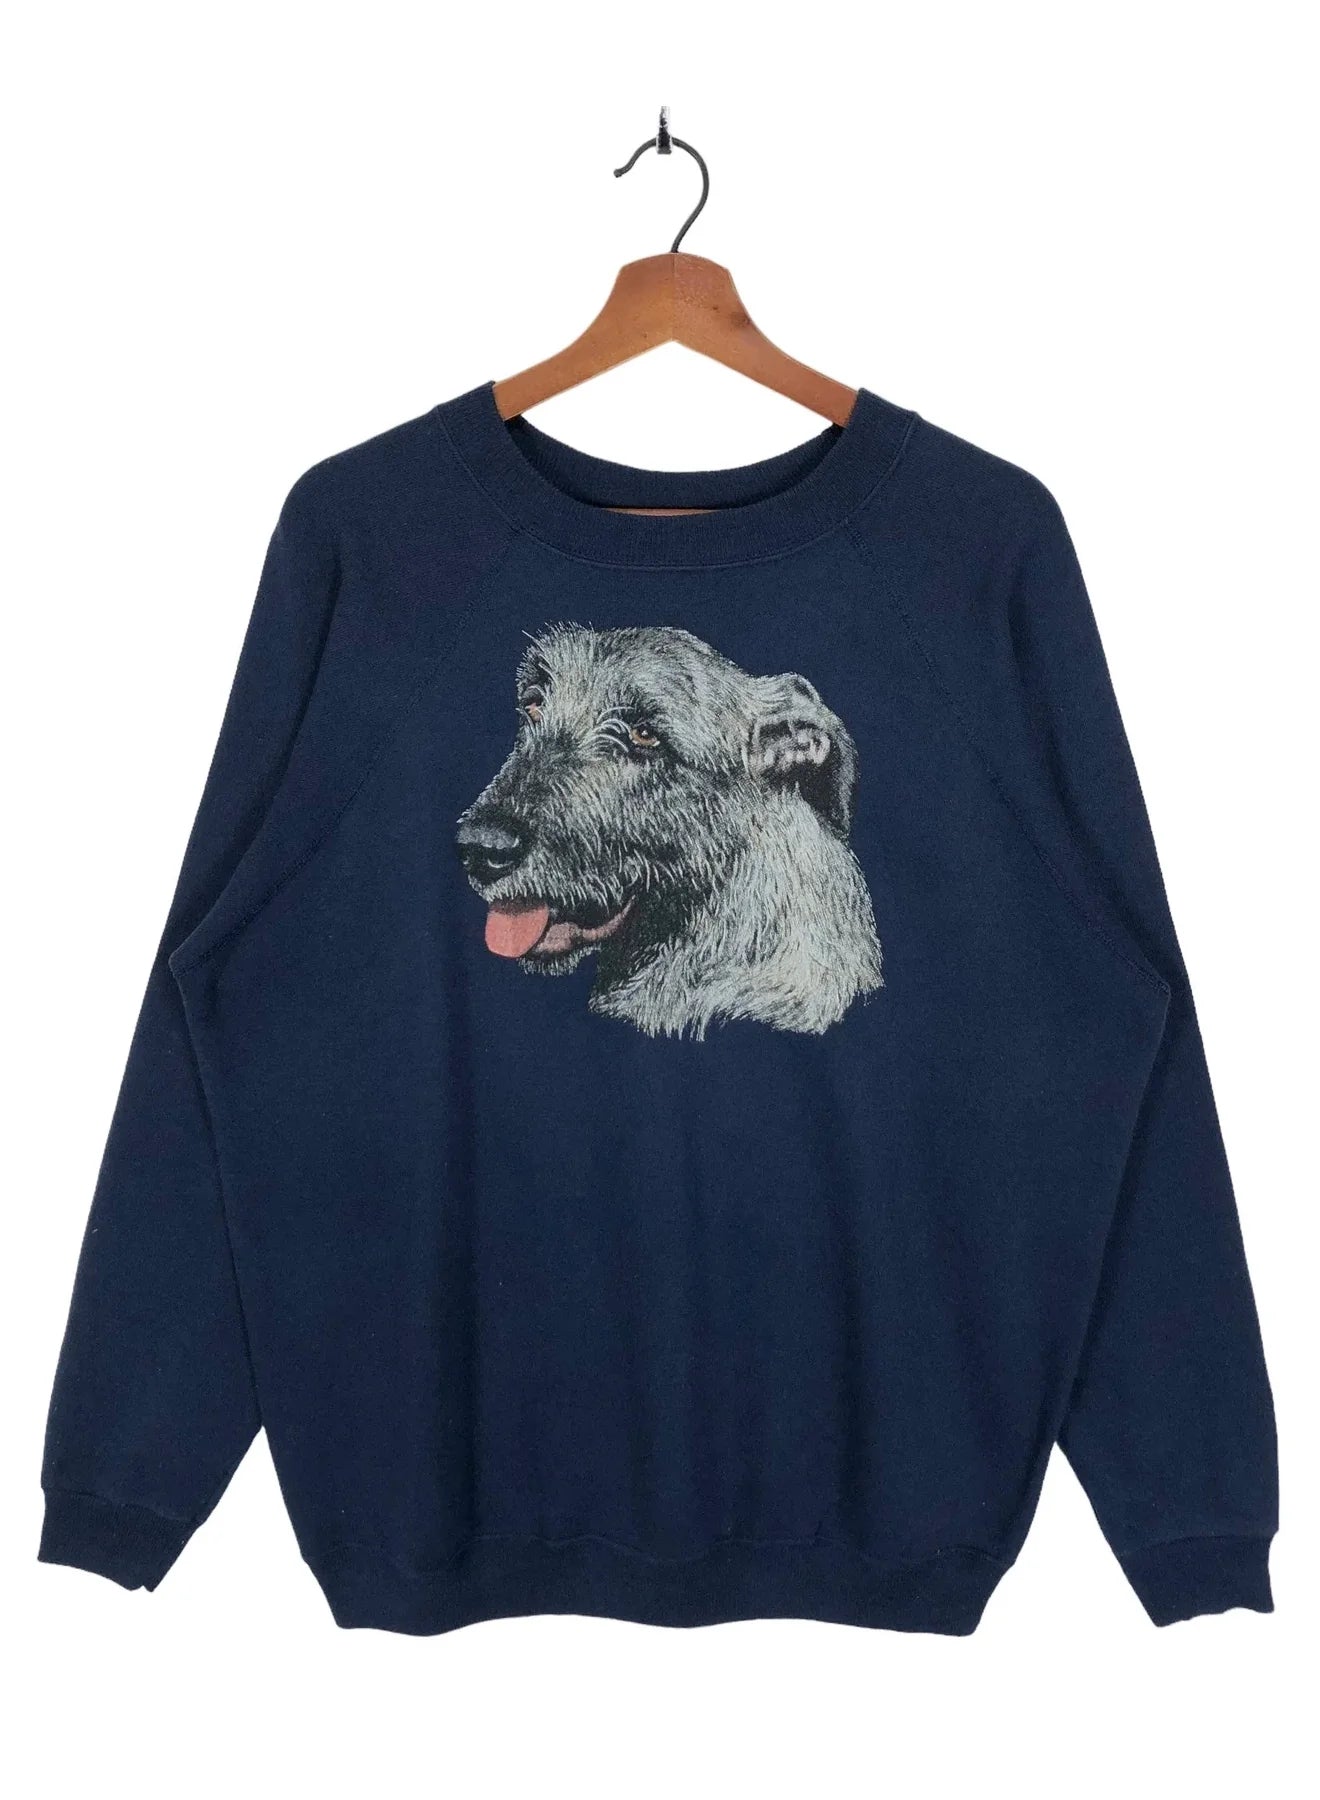 1990’s Irish Wolfhound Breed Sweatshirt Crewneck Puppy Dog Sweatshirt Size Large